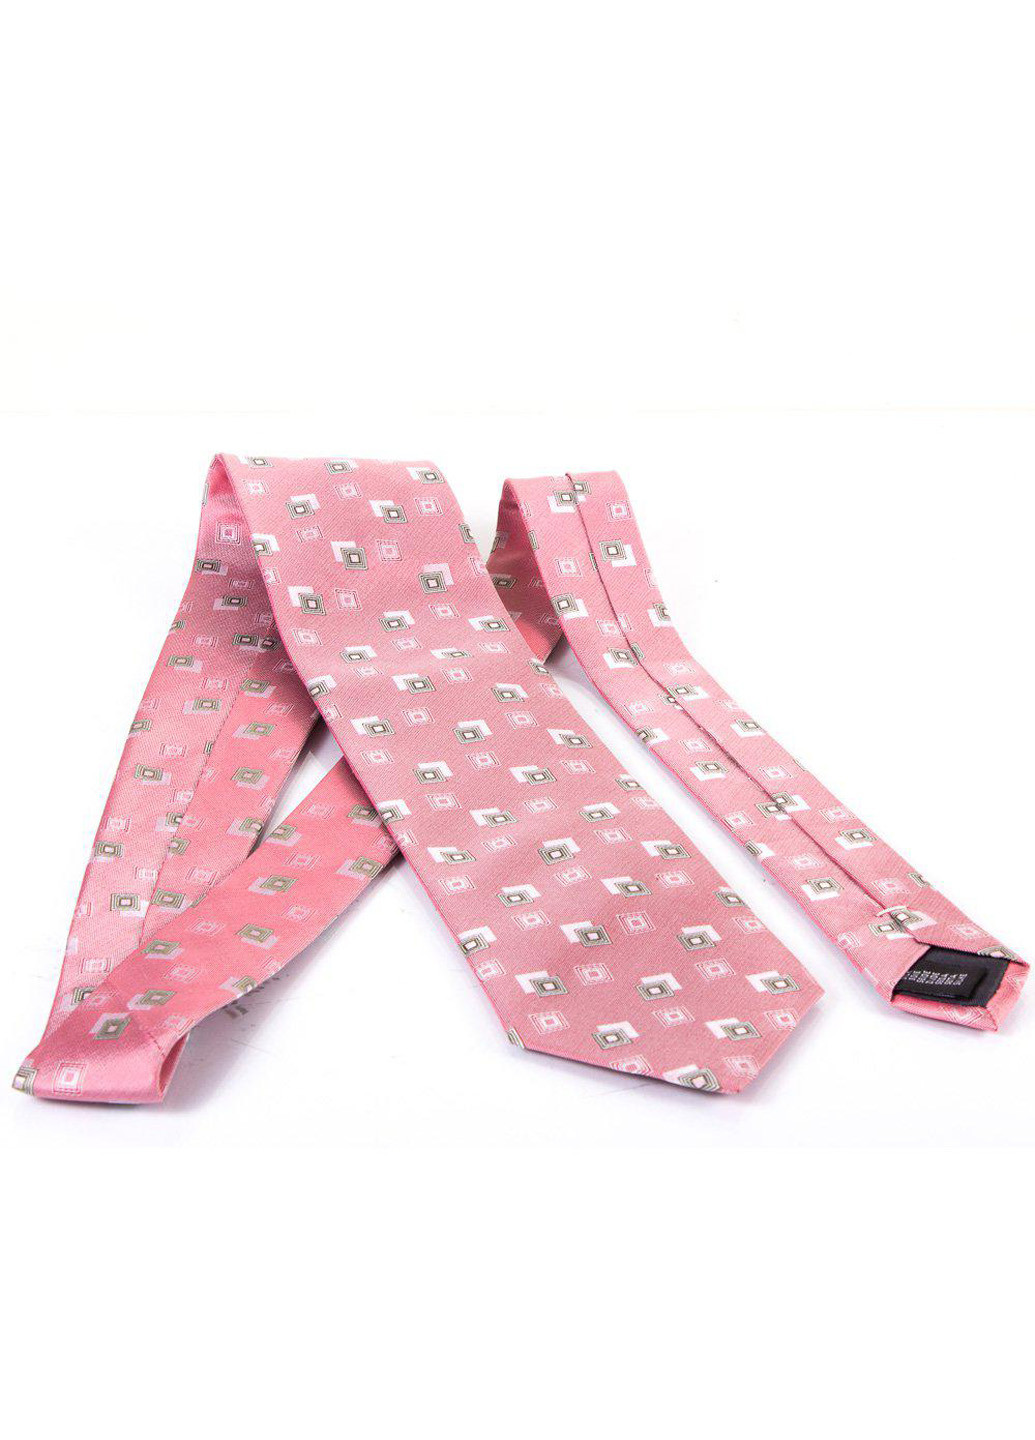 Мужской шелковый галстук 150 см Schonau & Houcken (195546925)